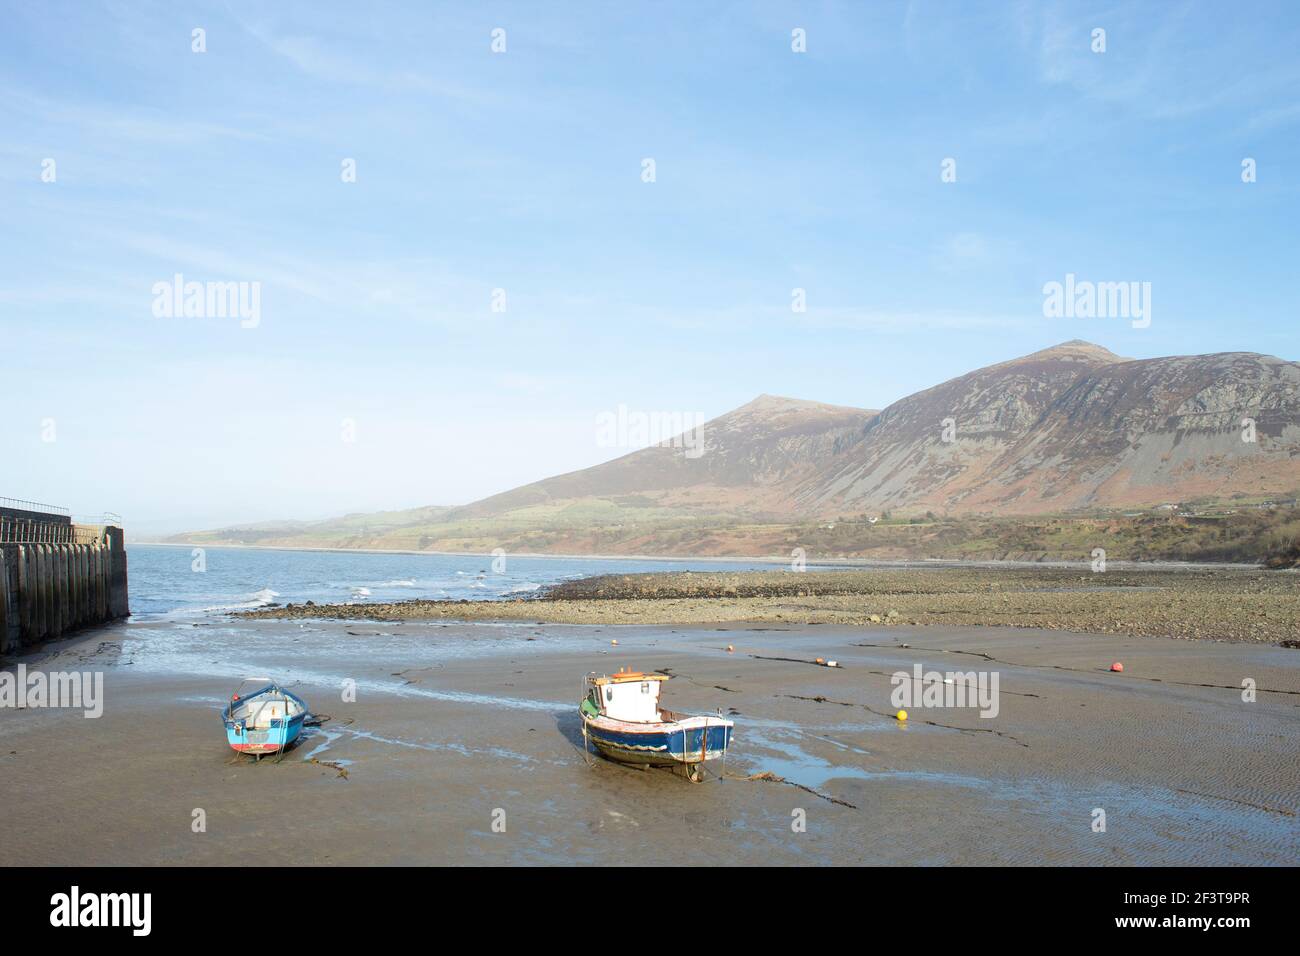 Plage de Trefor, pays de Galles. Deux petits bateaux de pêche dans une baie isolée près de Snowdonia, sur la péninsule de Llyn, lors d'une journée de printemps ensoleillée et lumineuse. Calme et calme Banque D'Images